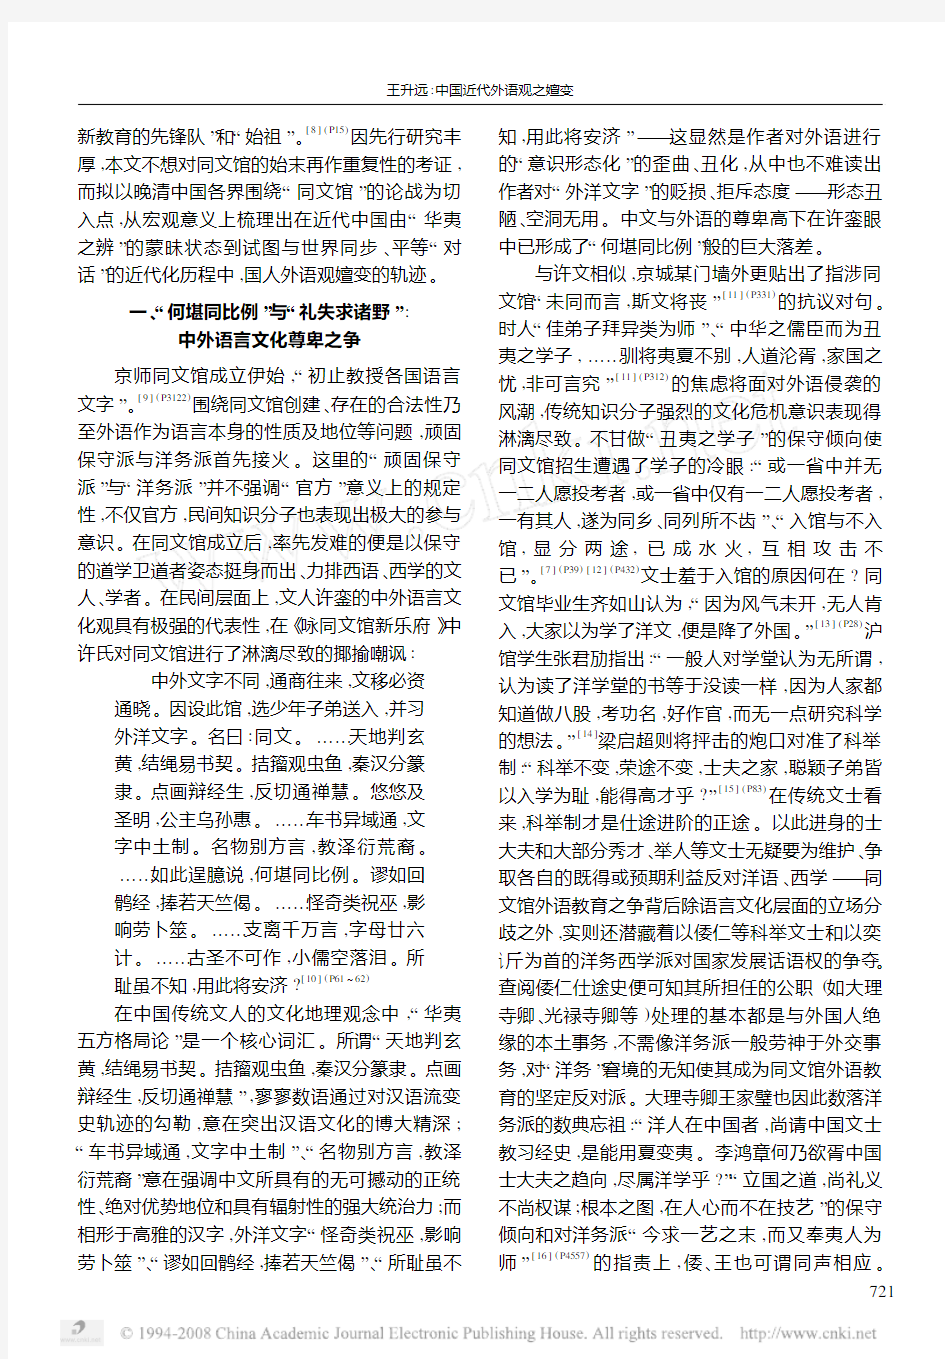 中国近代外语观之嬗变—对清末同文馆之争的反思(王升远)